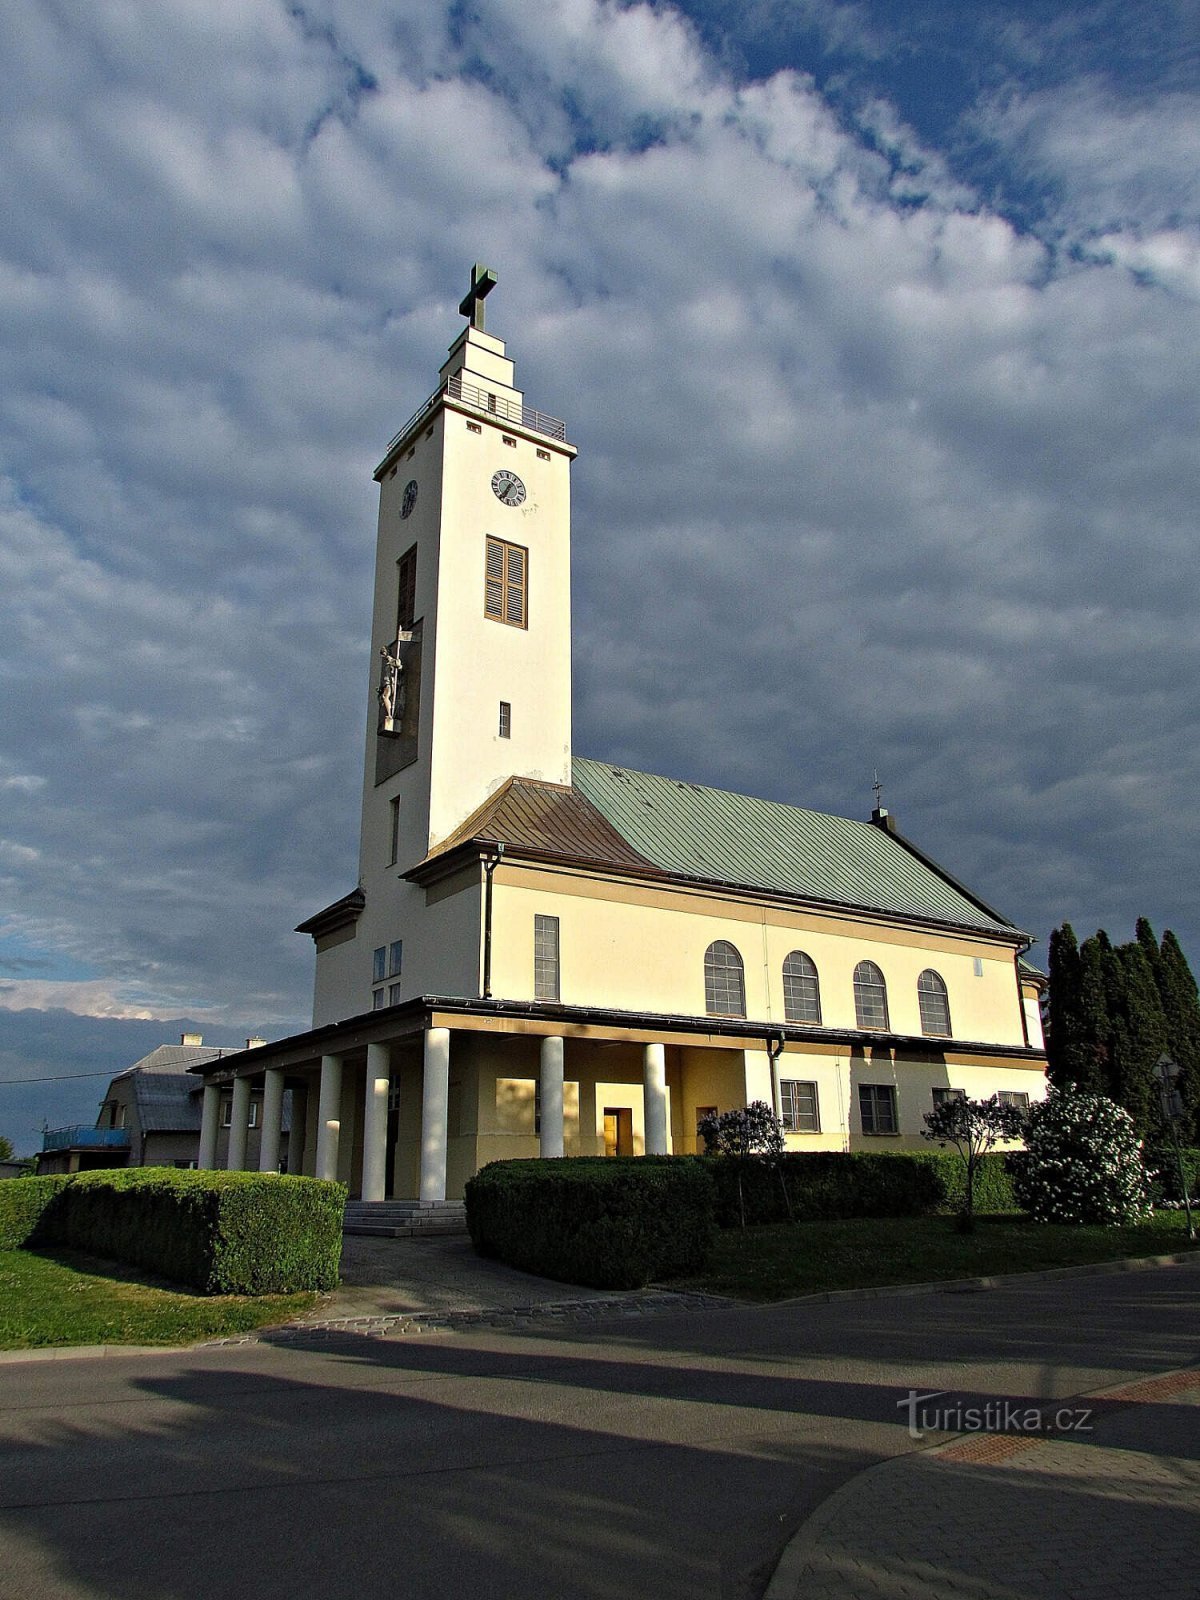 Ростены - церковь св. Флориана